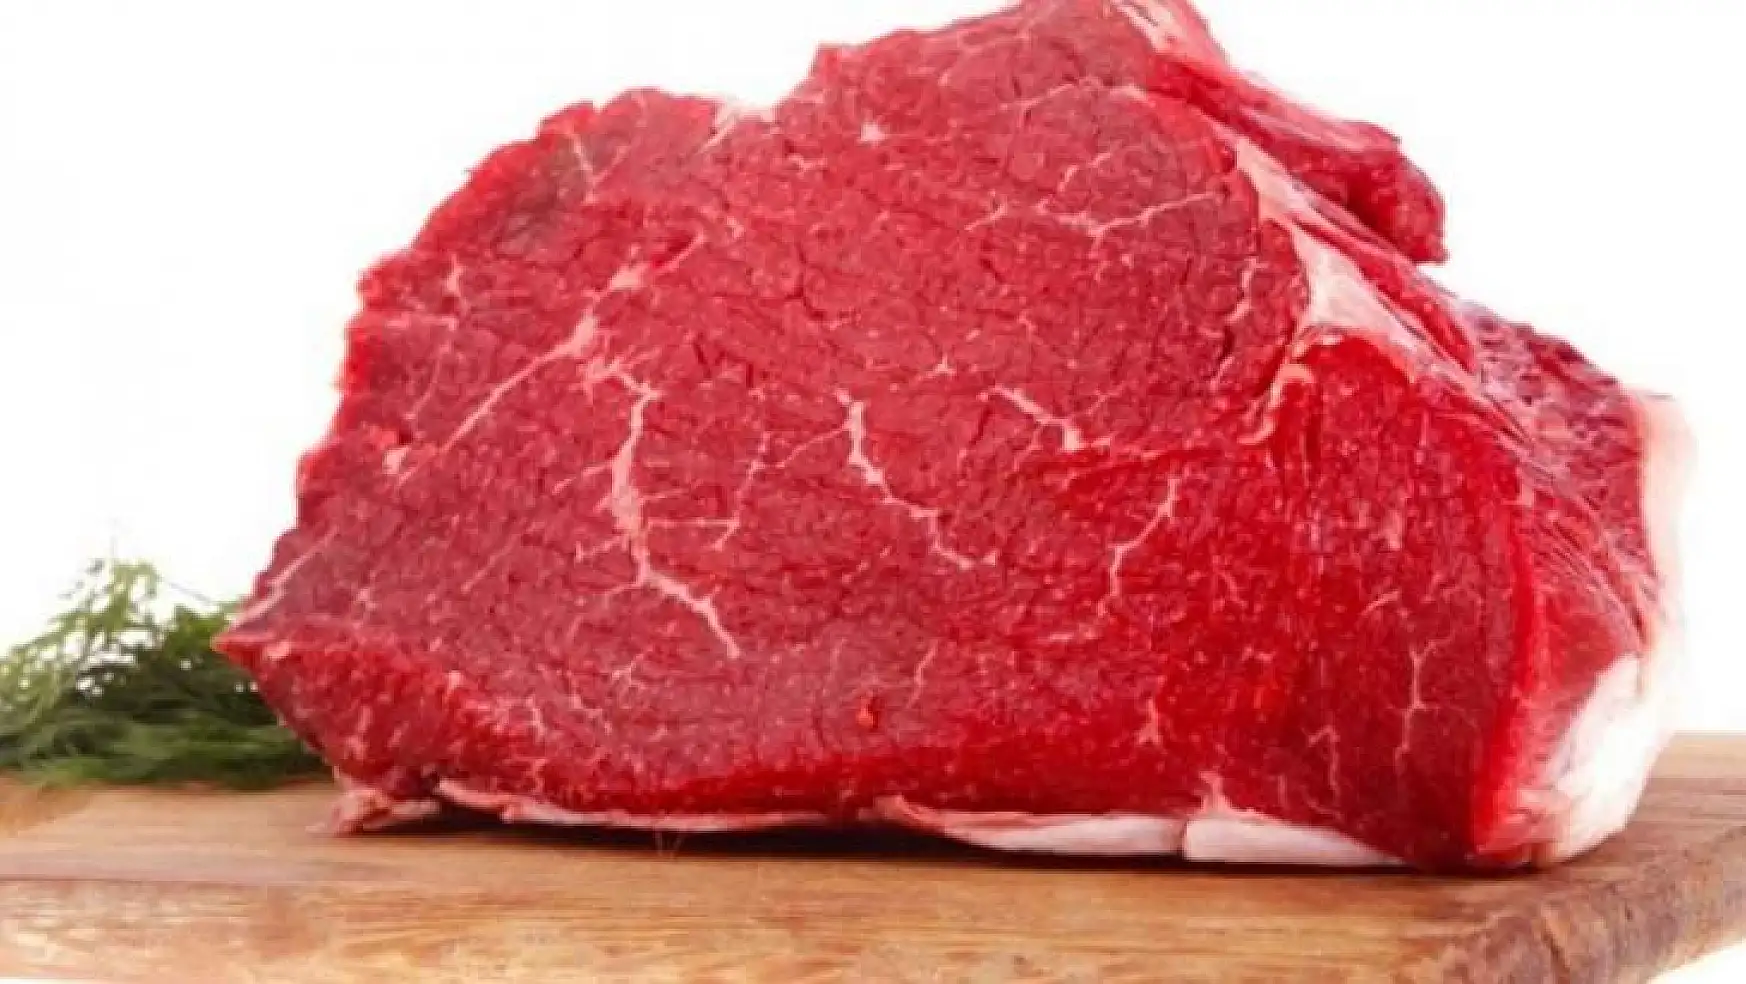 Toplam kırmızı et üretimi ilk çeyrekte azaldı